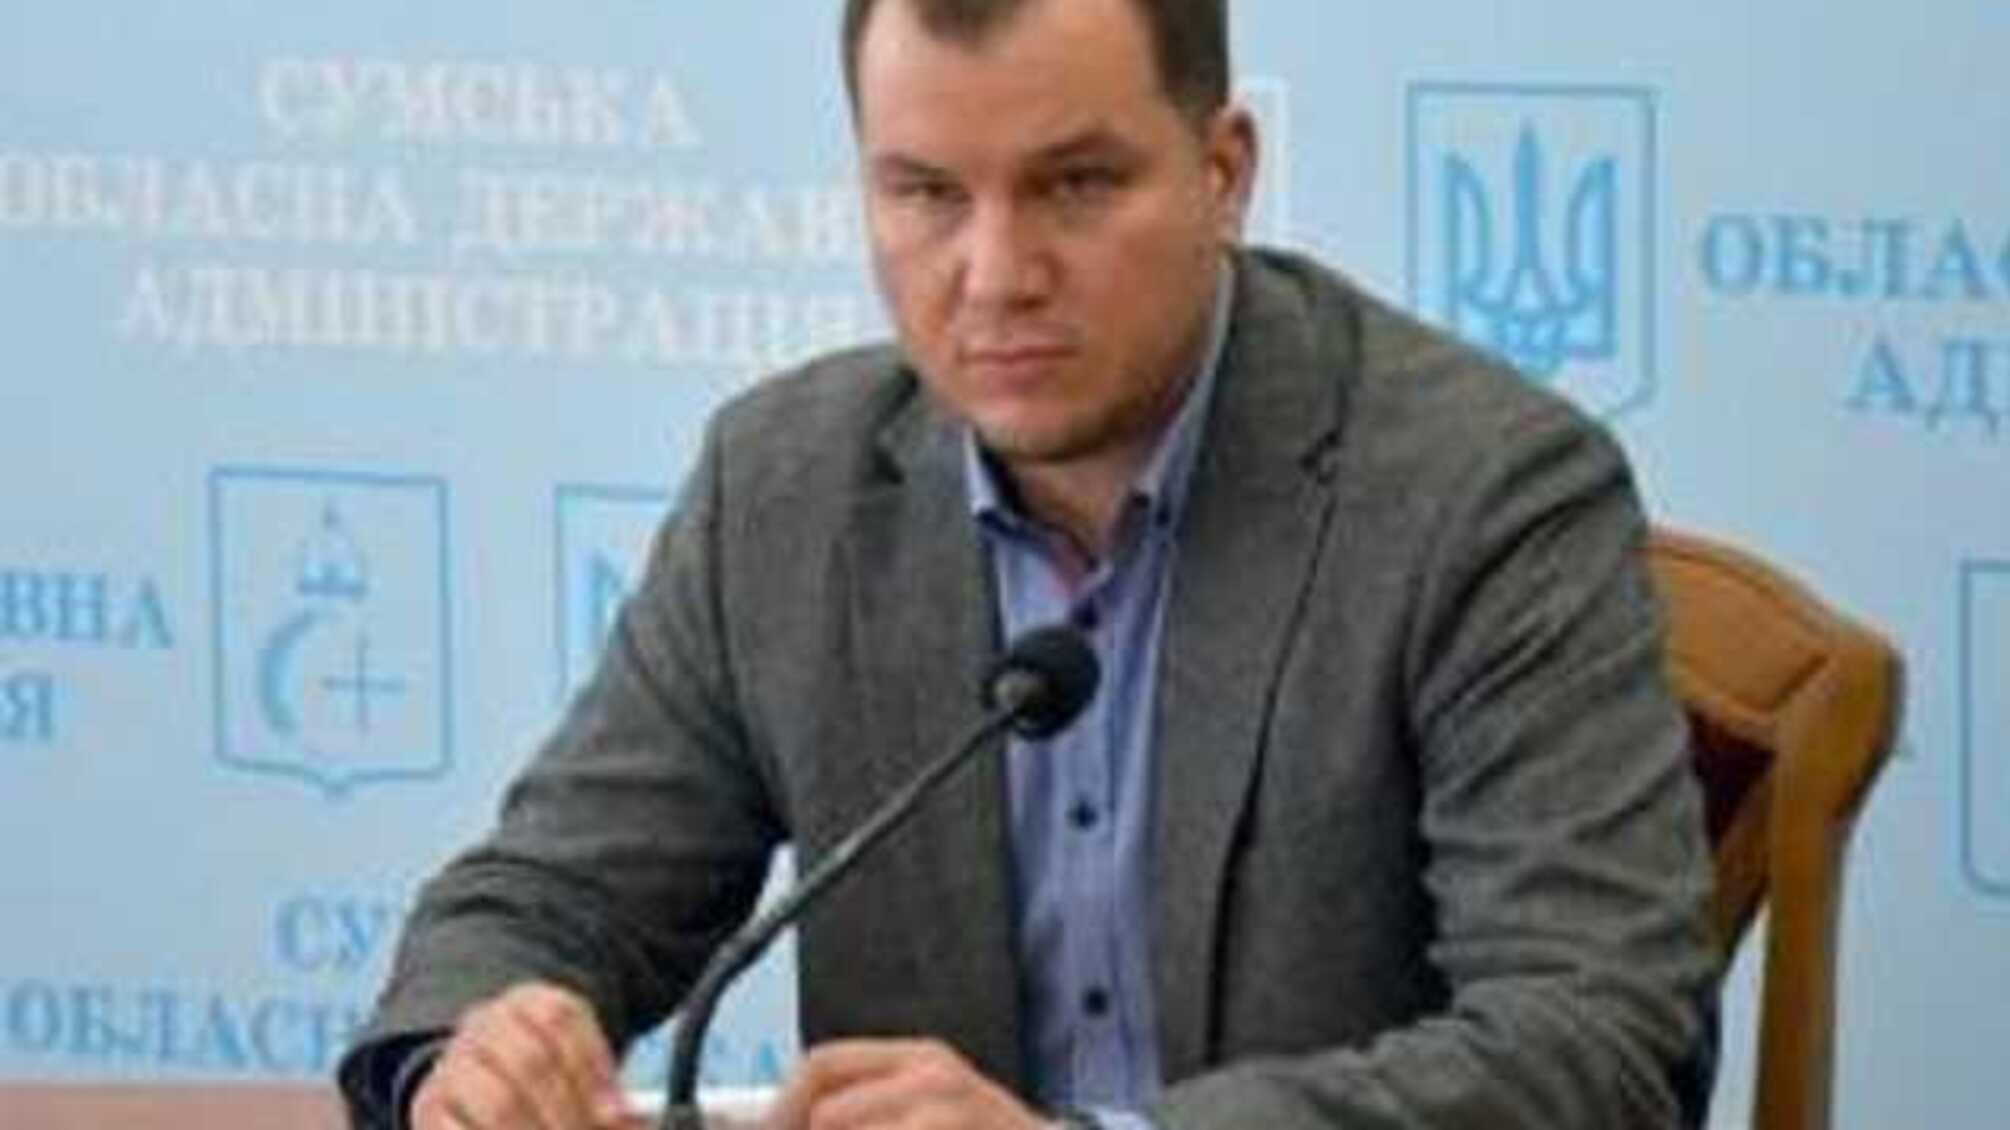 Кабмин согласовал кандидатуру нового главы Сумской ОГА